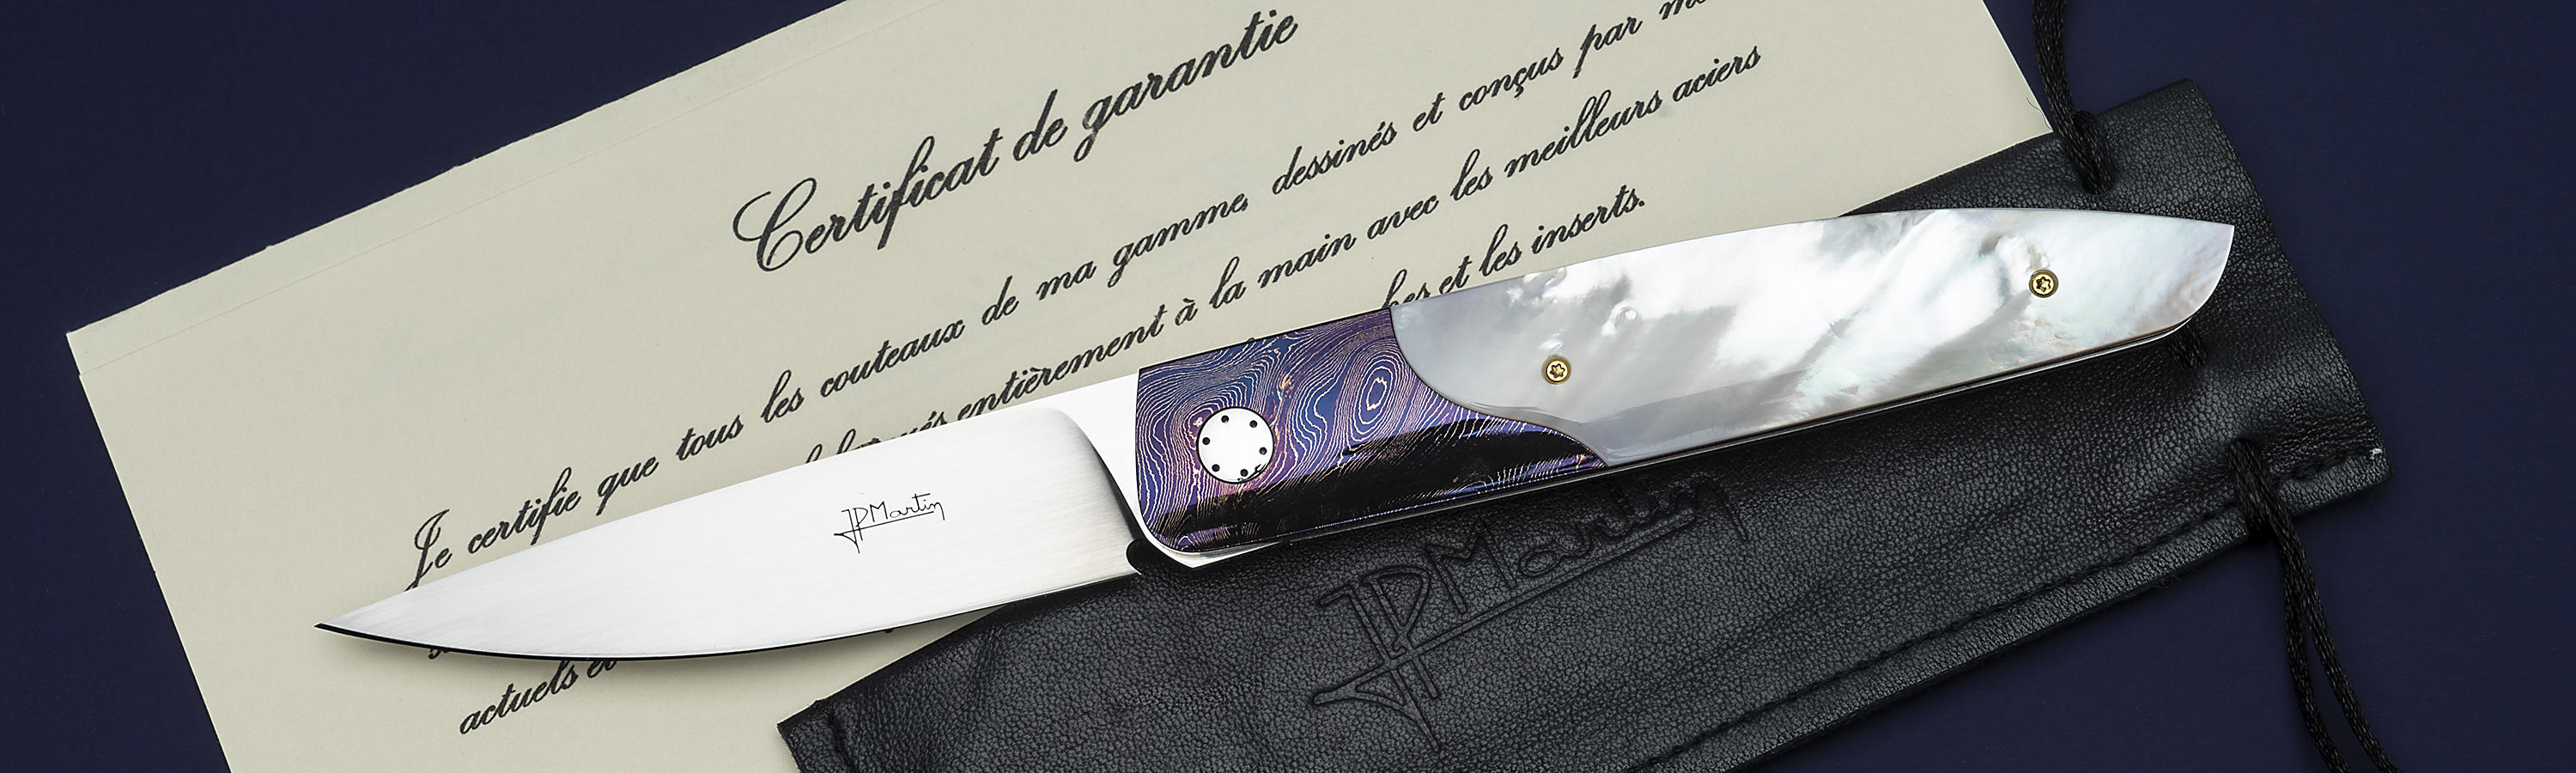 Jean-Pierre Martin нож City обратный флиппер в подарок директору